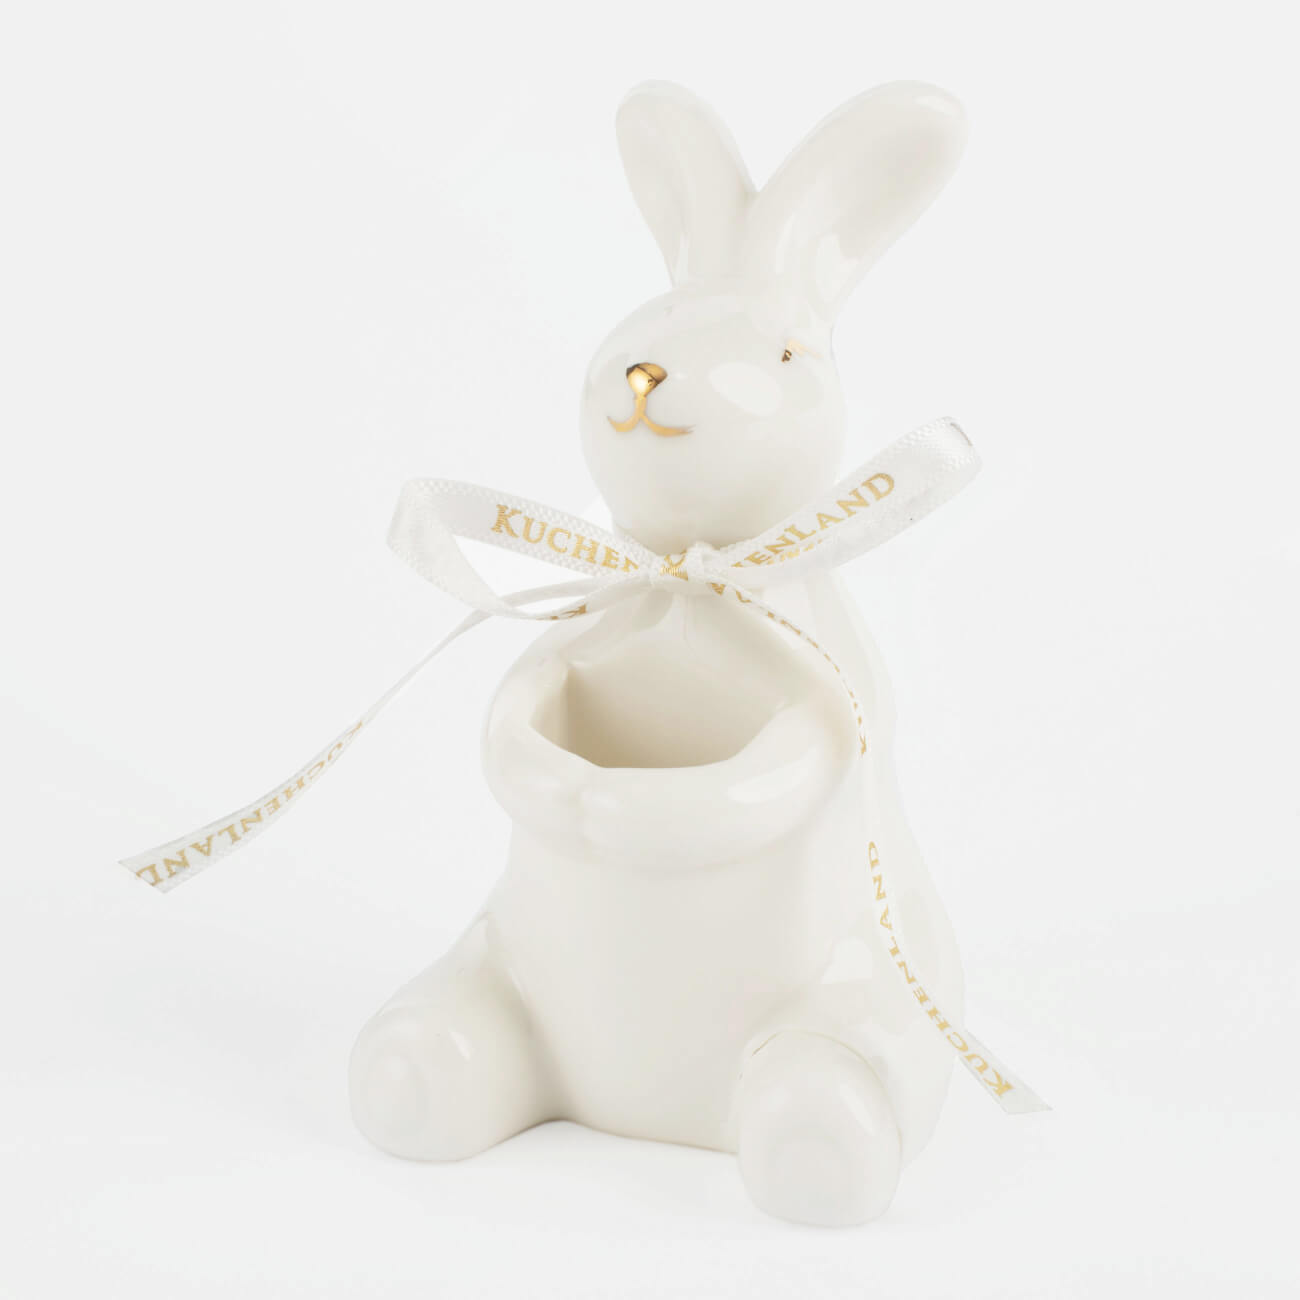 Подставка для зубочисток, 10 см, фарфор P, бело-золотистая, Кролик, Easter gold подвеска пасхальное яйцо 10 см пенопласт кролик в ах easter